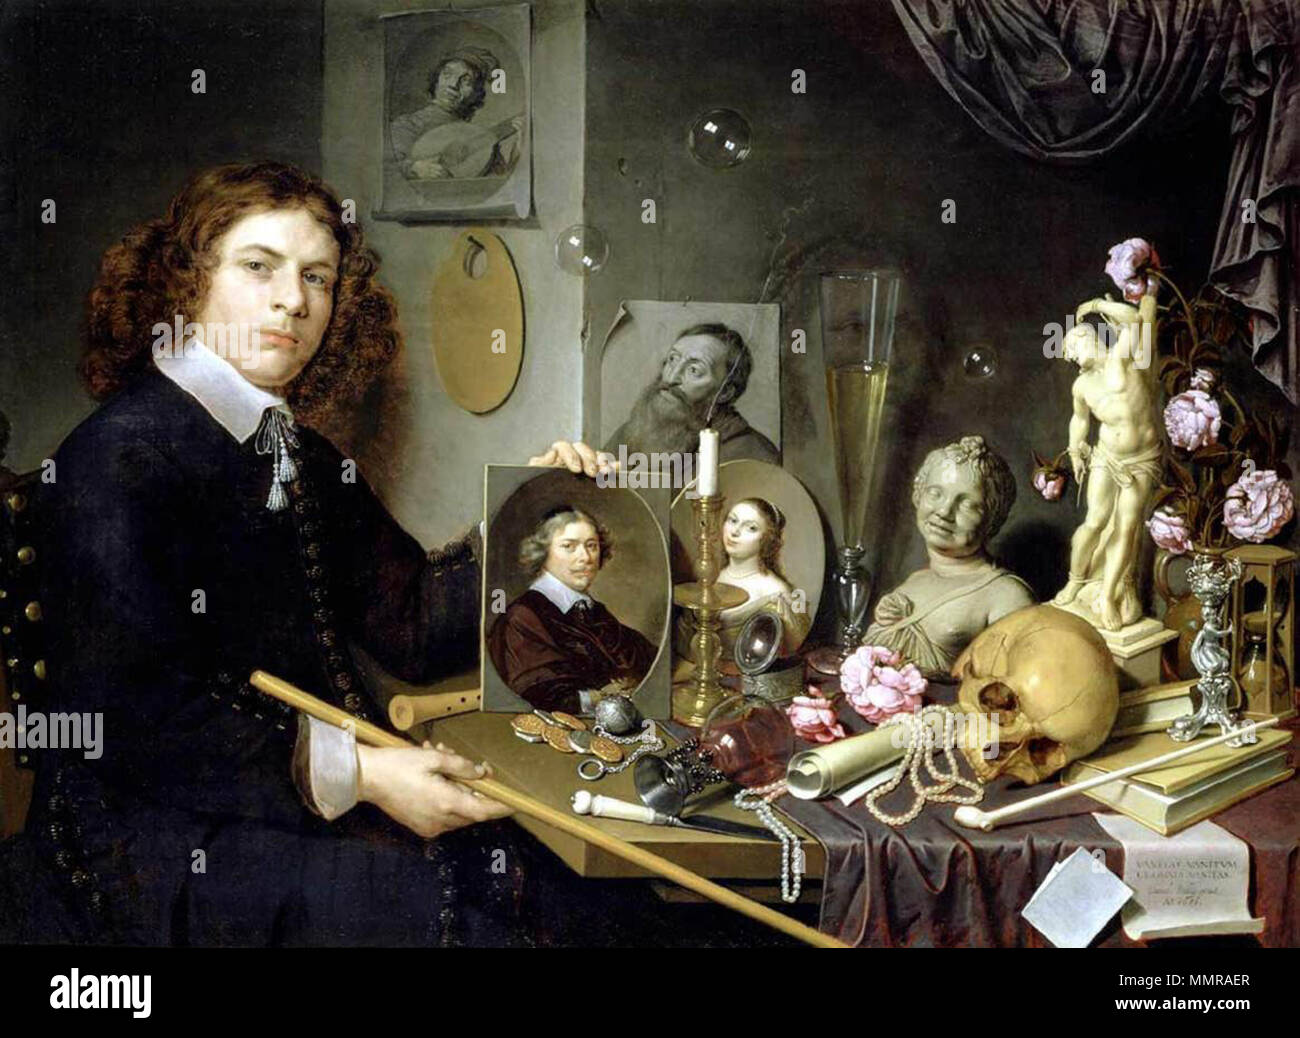 Bailly, David - Self-portrait avec des symboles - 1651 Vanitas Banque D'Images